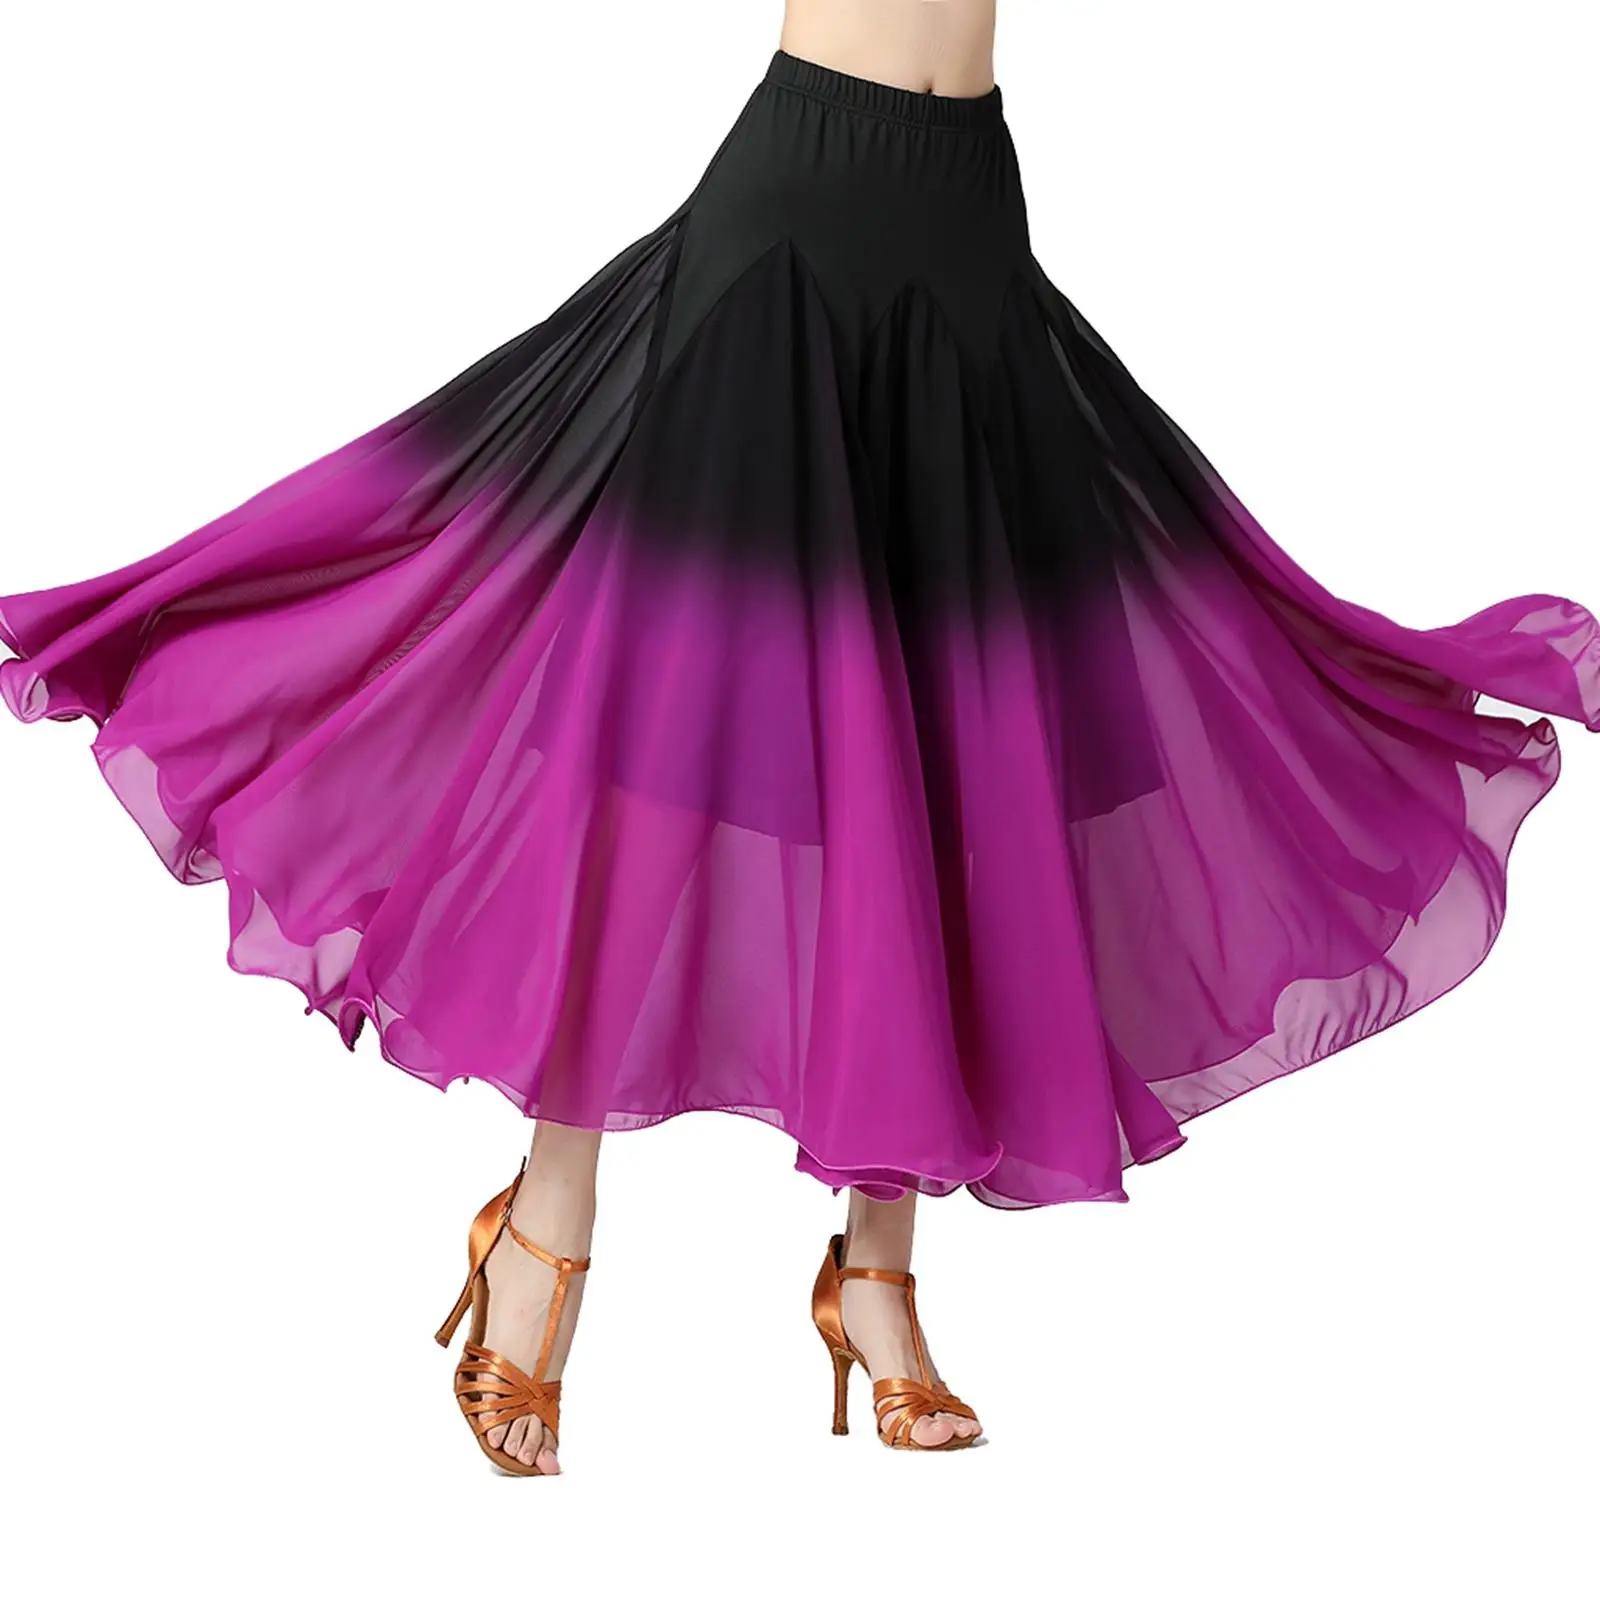 Womens Ballroom Dance Skirt Costume Latin Party Dress Fashion Dancing Practice Elegant Long Swing Skirt Performance Festival